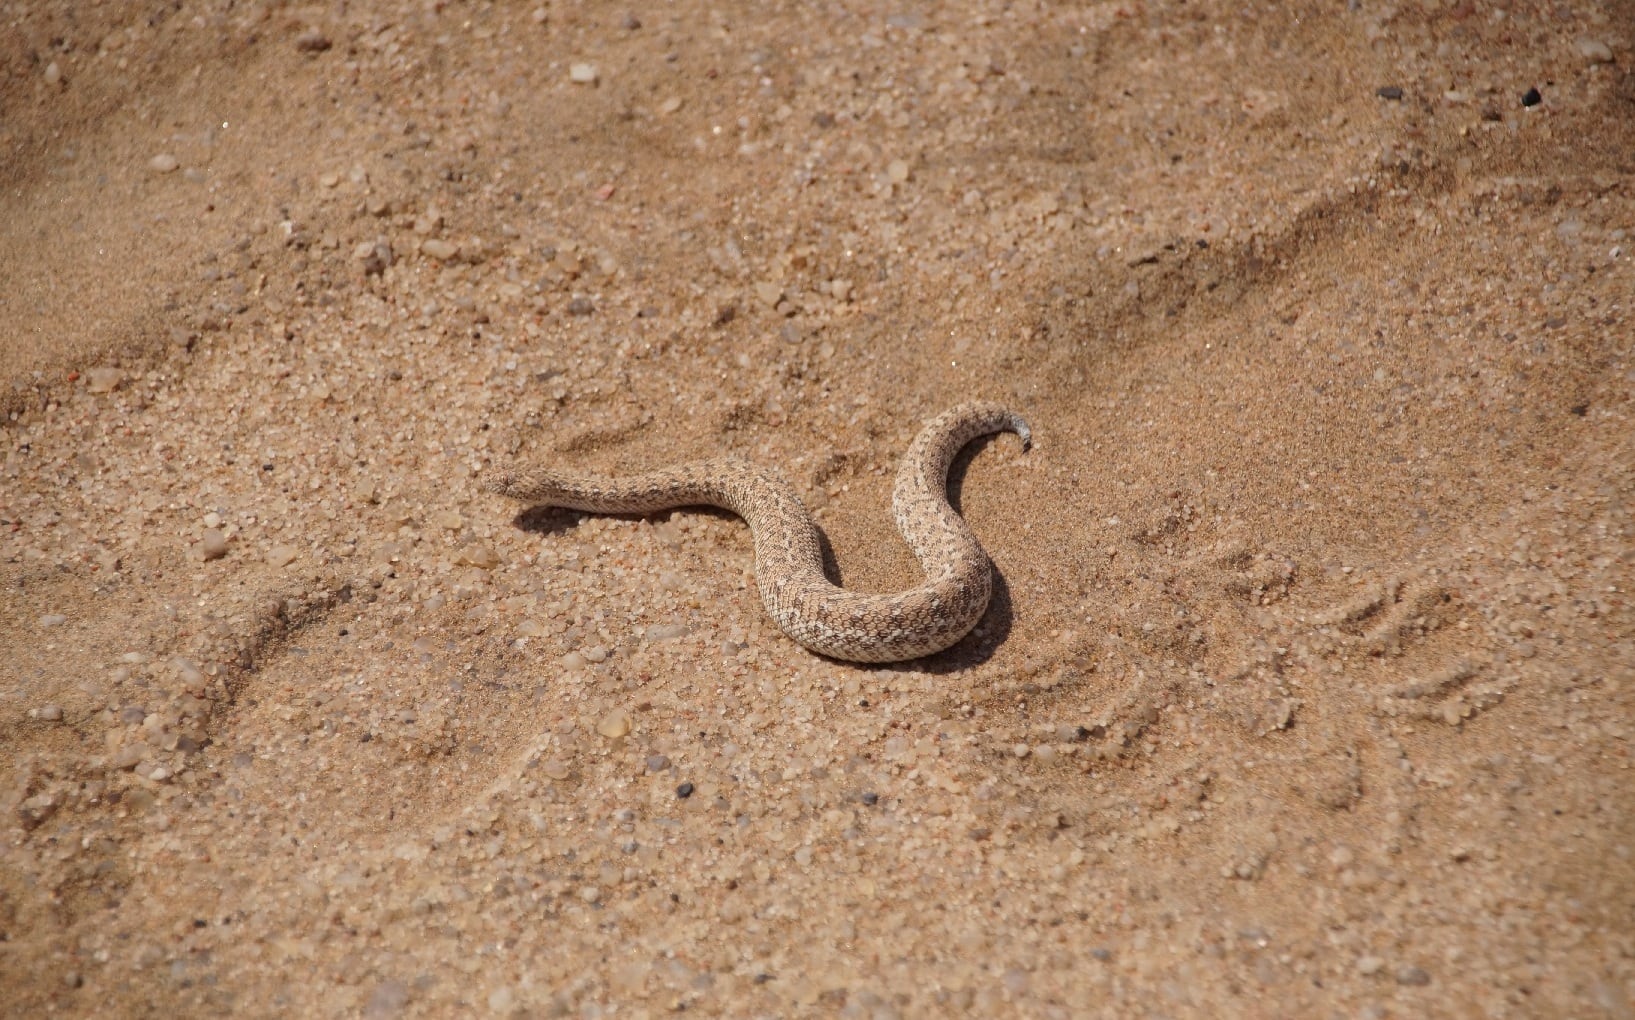 Schlange in der Namib Wüste in Namibia